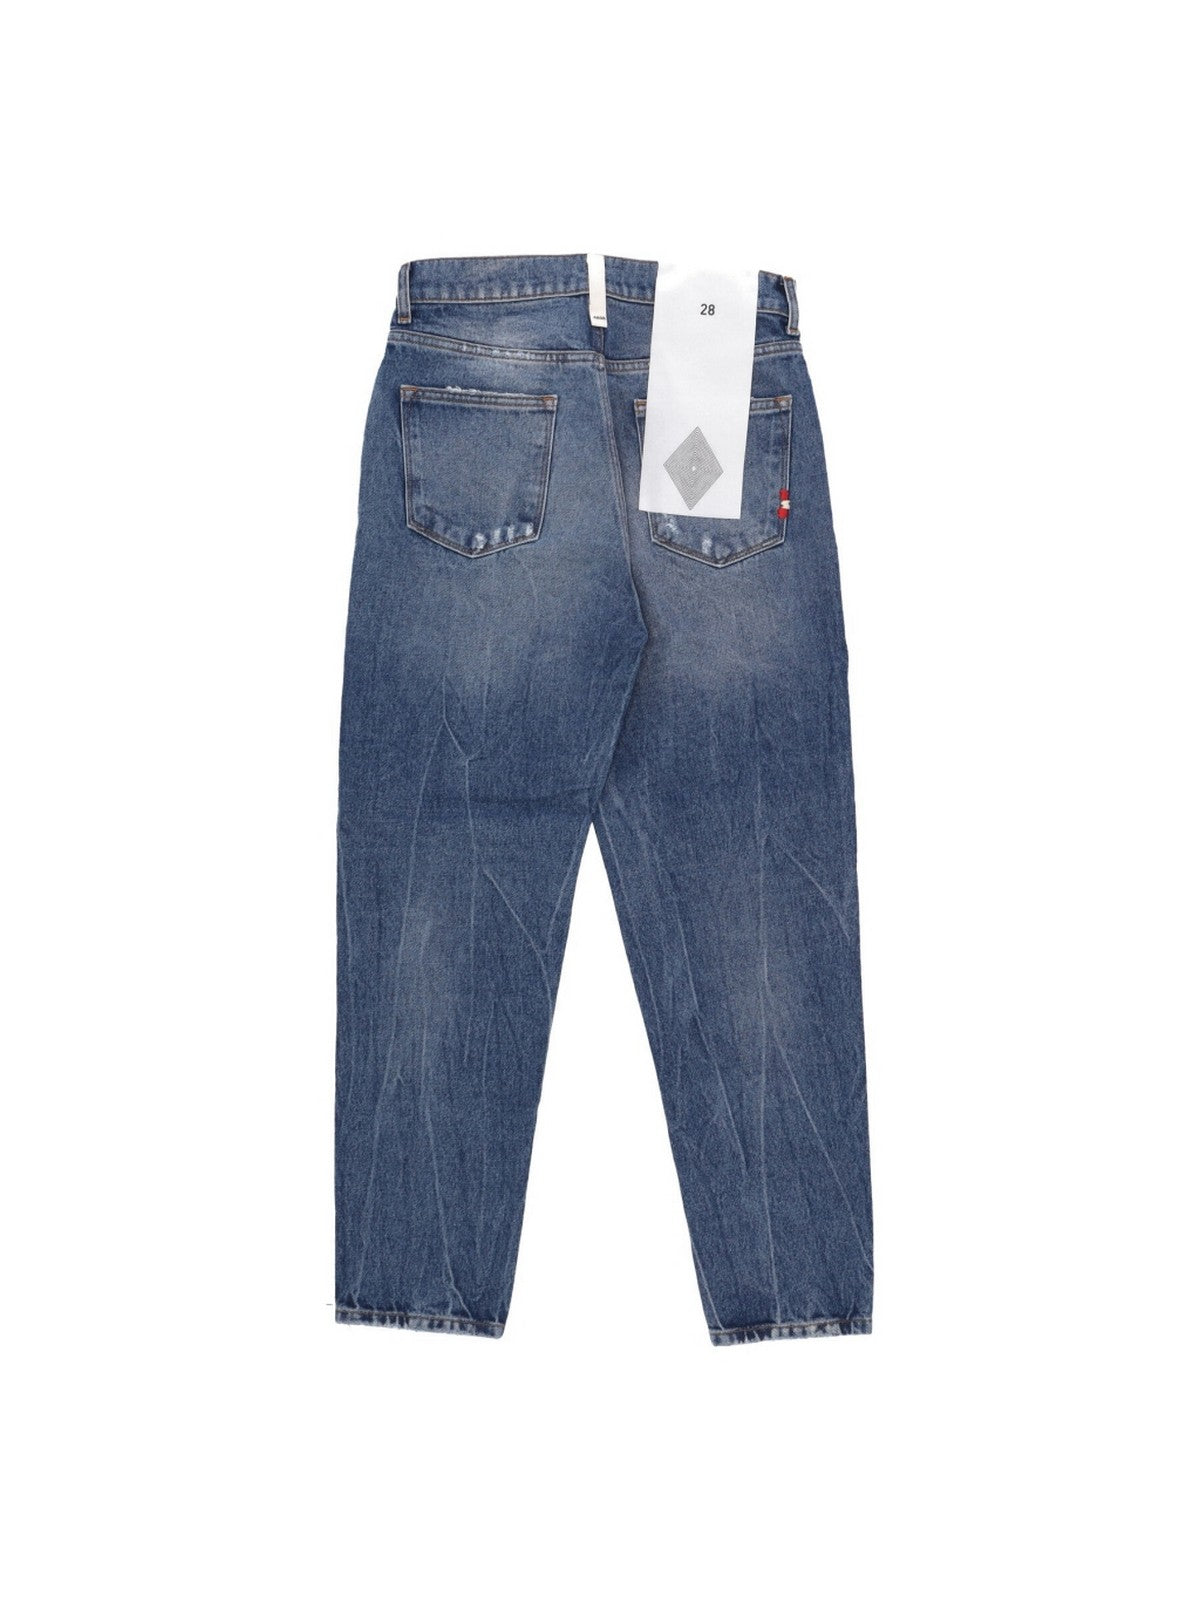 AMISH Jeans Hommes AMU001D4352377 999 Bleu